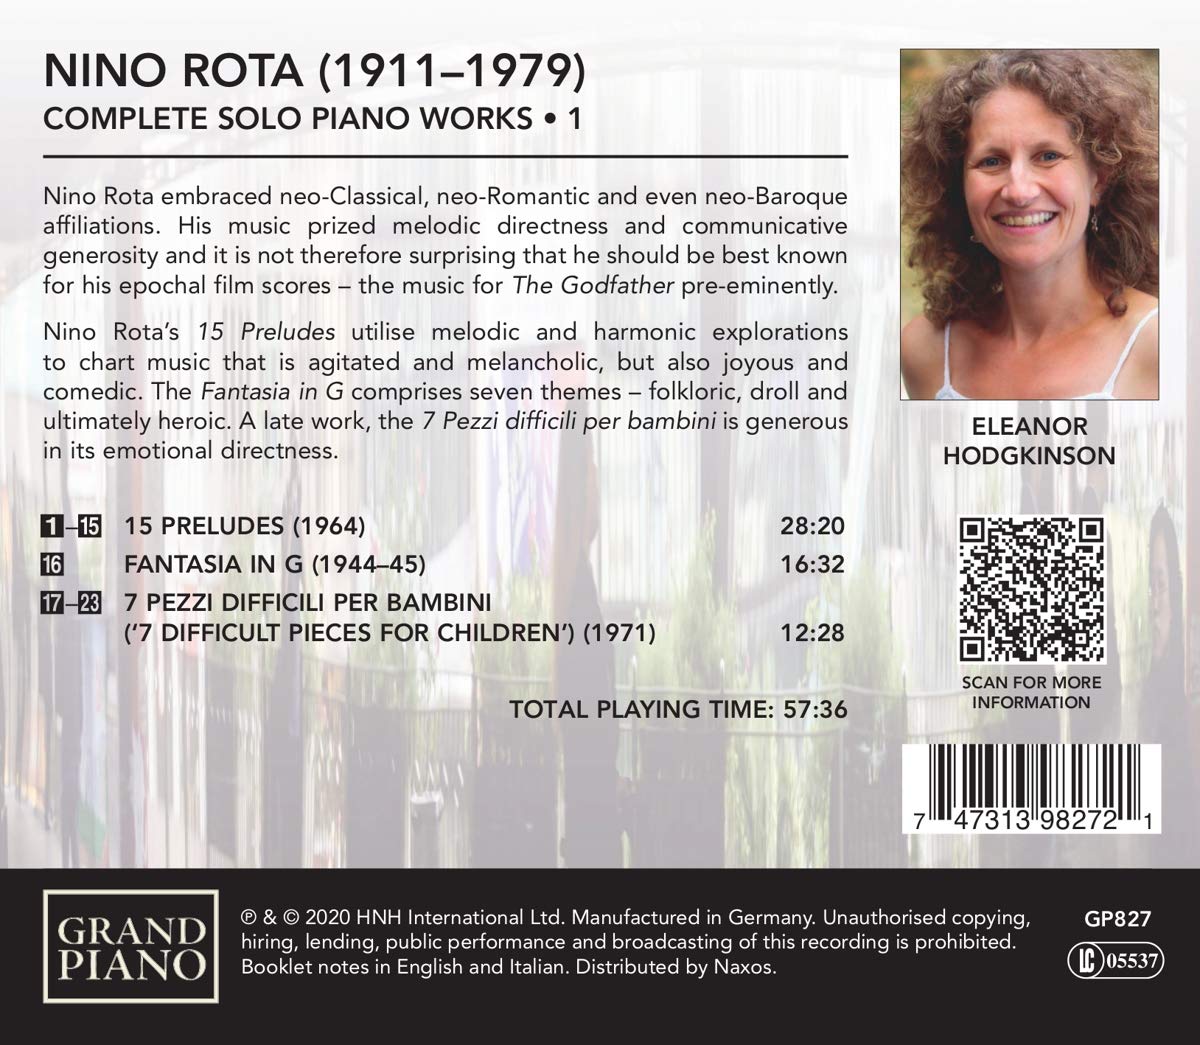 Eleanor Hodgkinson 니노 로타: 피아노 작품 전곡 1집 (Nino Rota: Complete Solo Piano Works, Vol. 1)